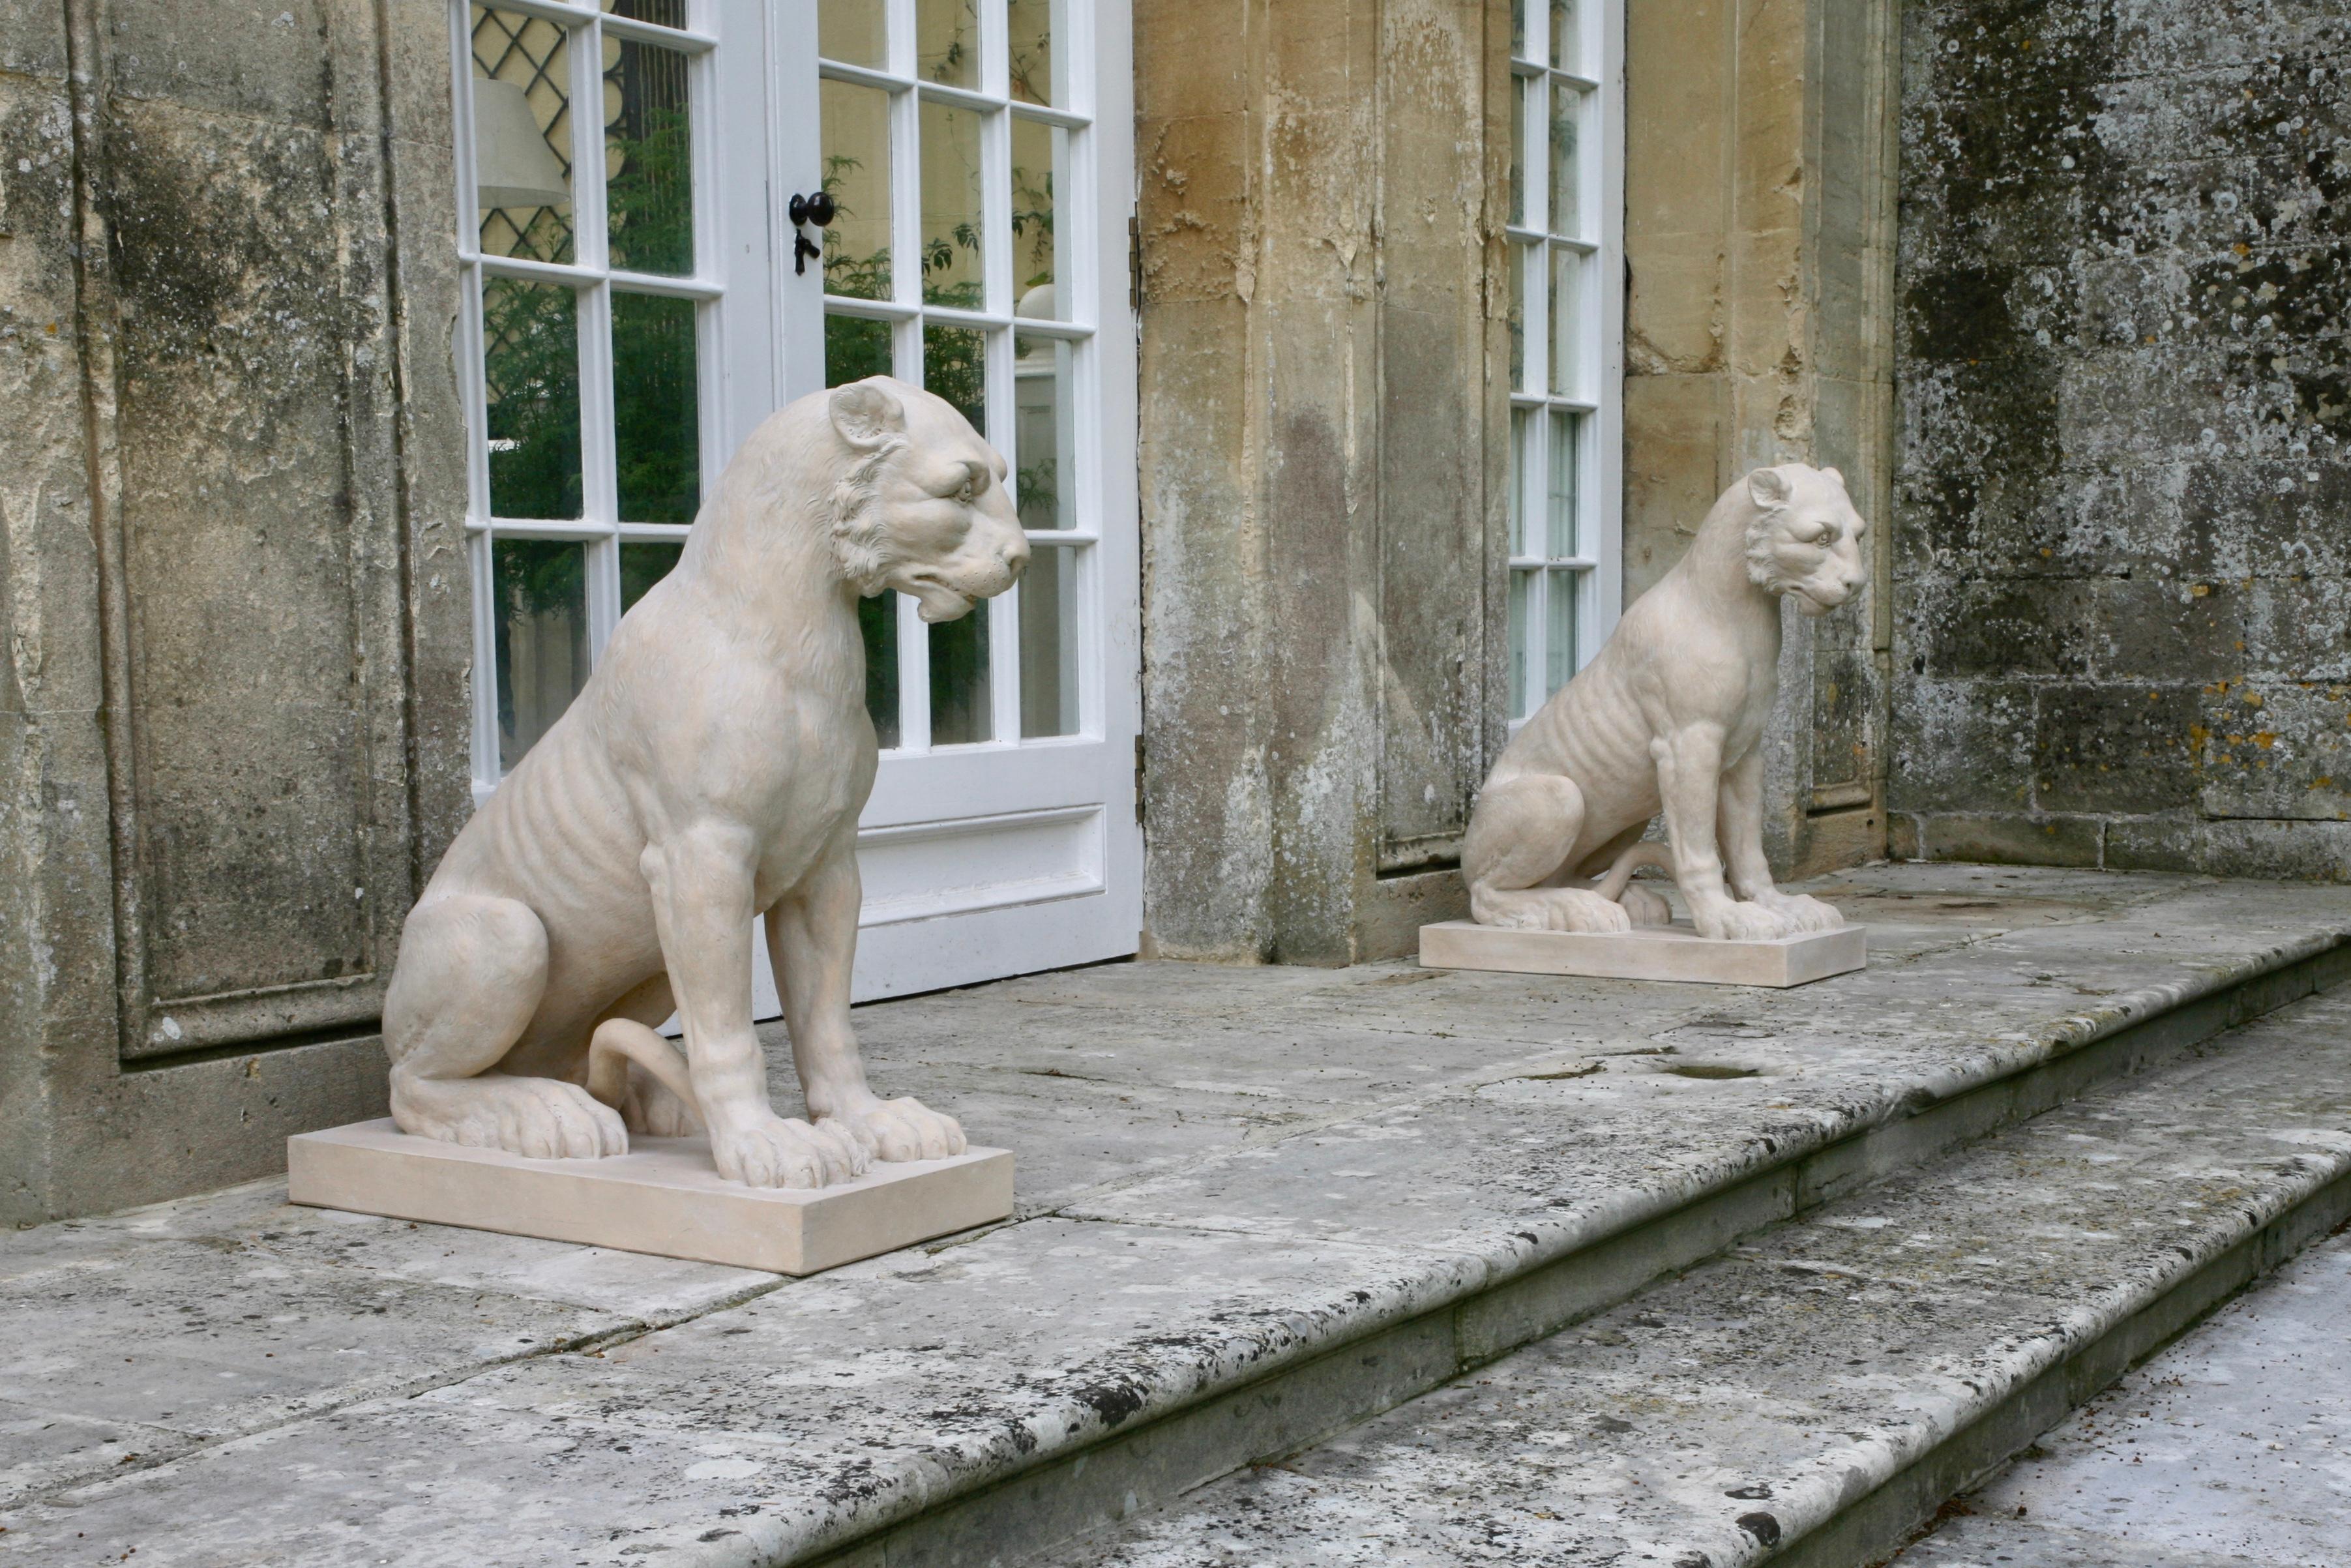 Tiger oder möglicherweise eine Löwin, nach einem Original aus dem 18. Jahrhundert von der Manufaktur "Coade" modelliert.

Dargestellt sitzend, mit Blick nach unten, auf einem modernen rechteckigen Sockel.

In der chinesischen Mythologie